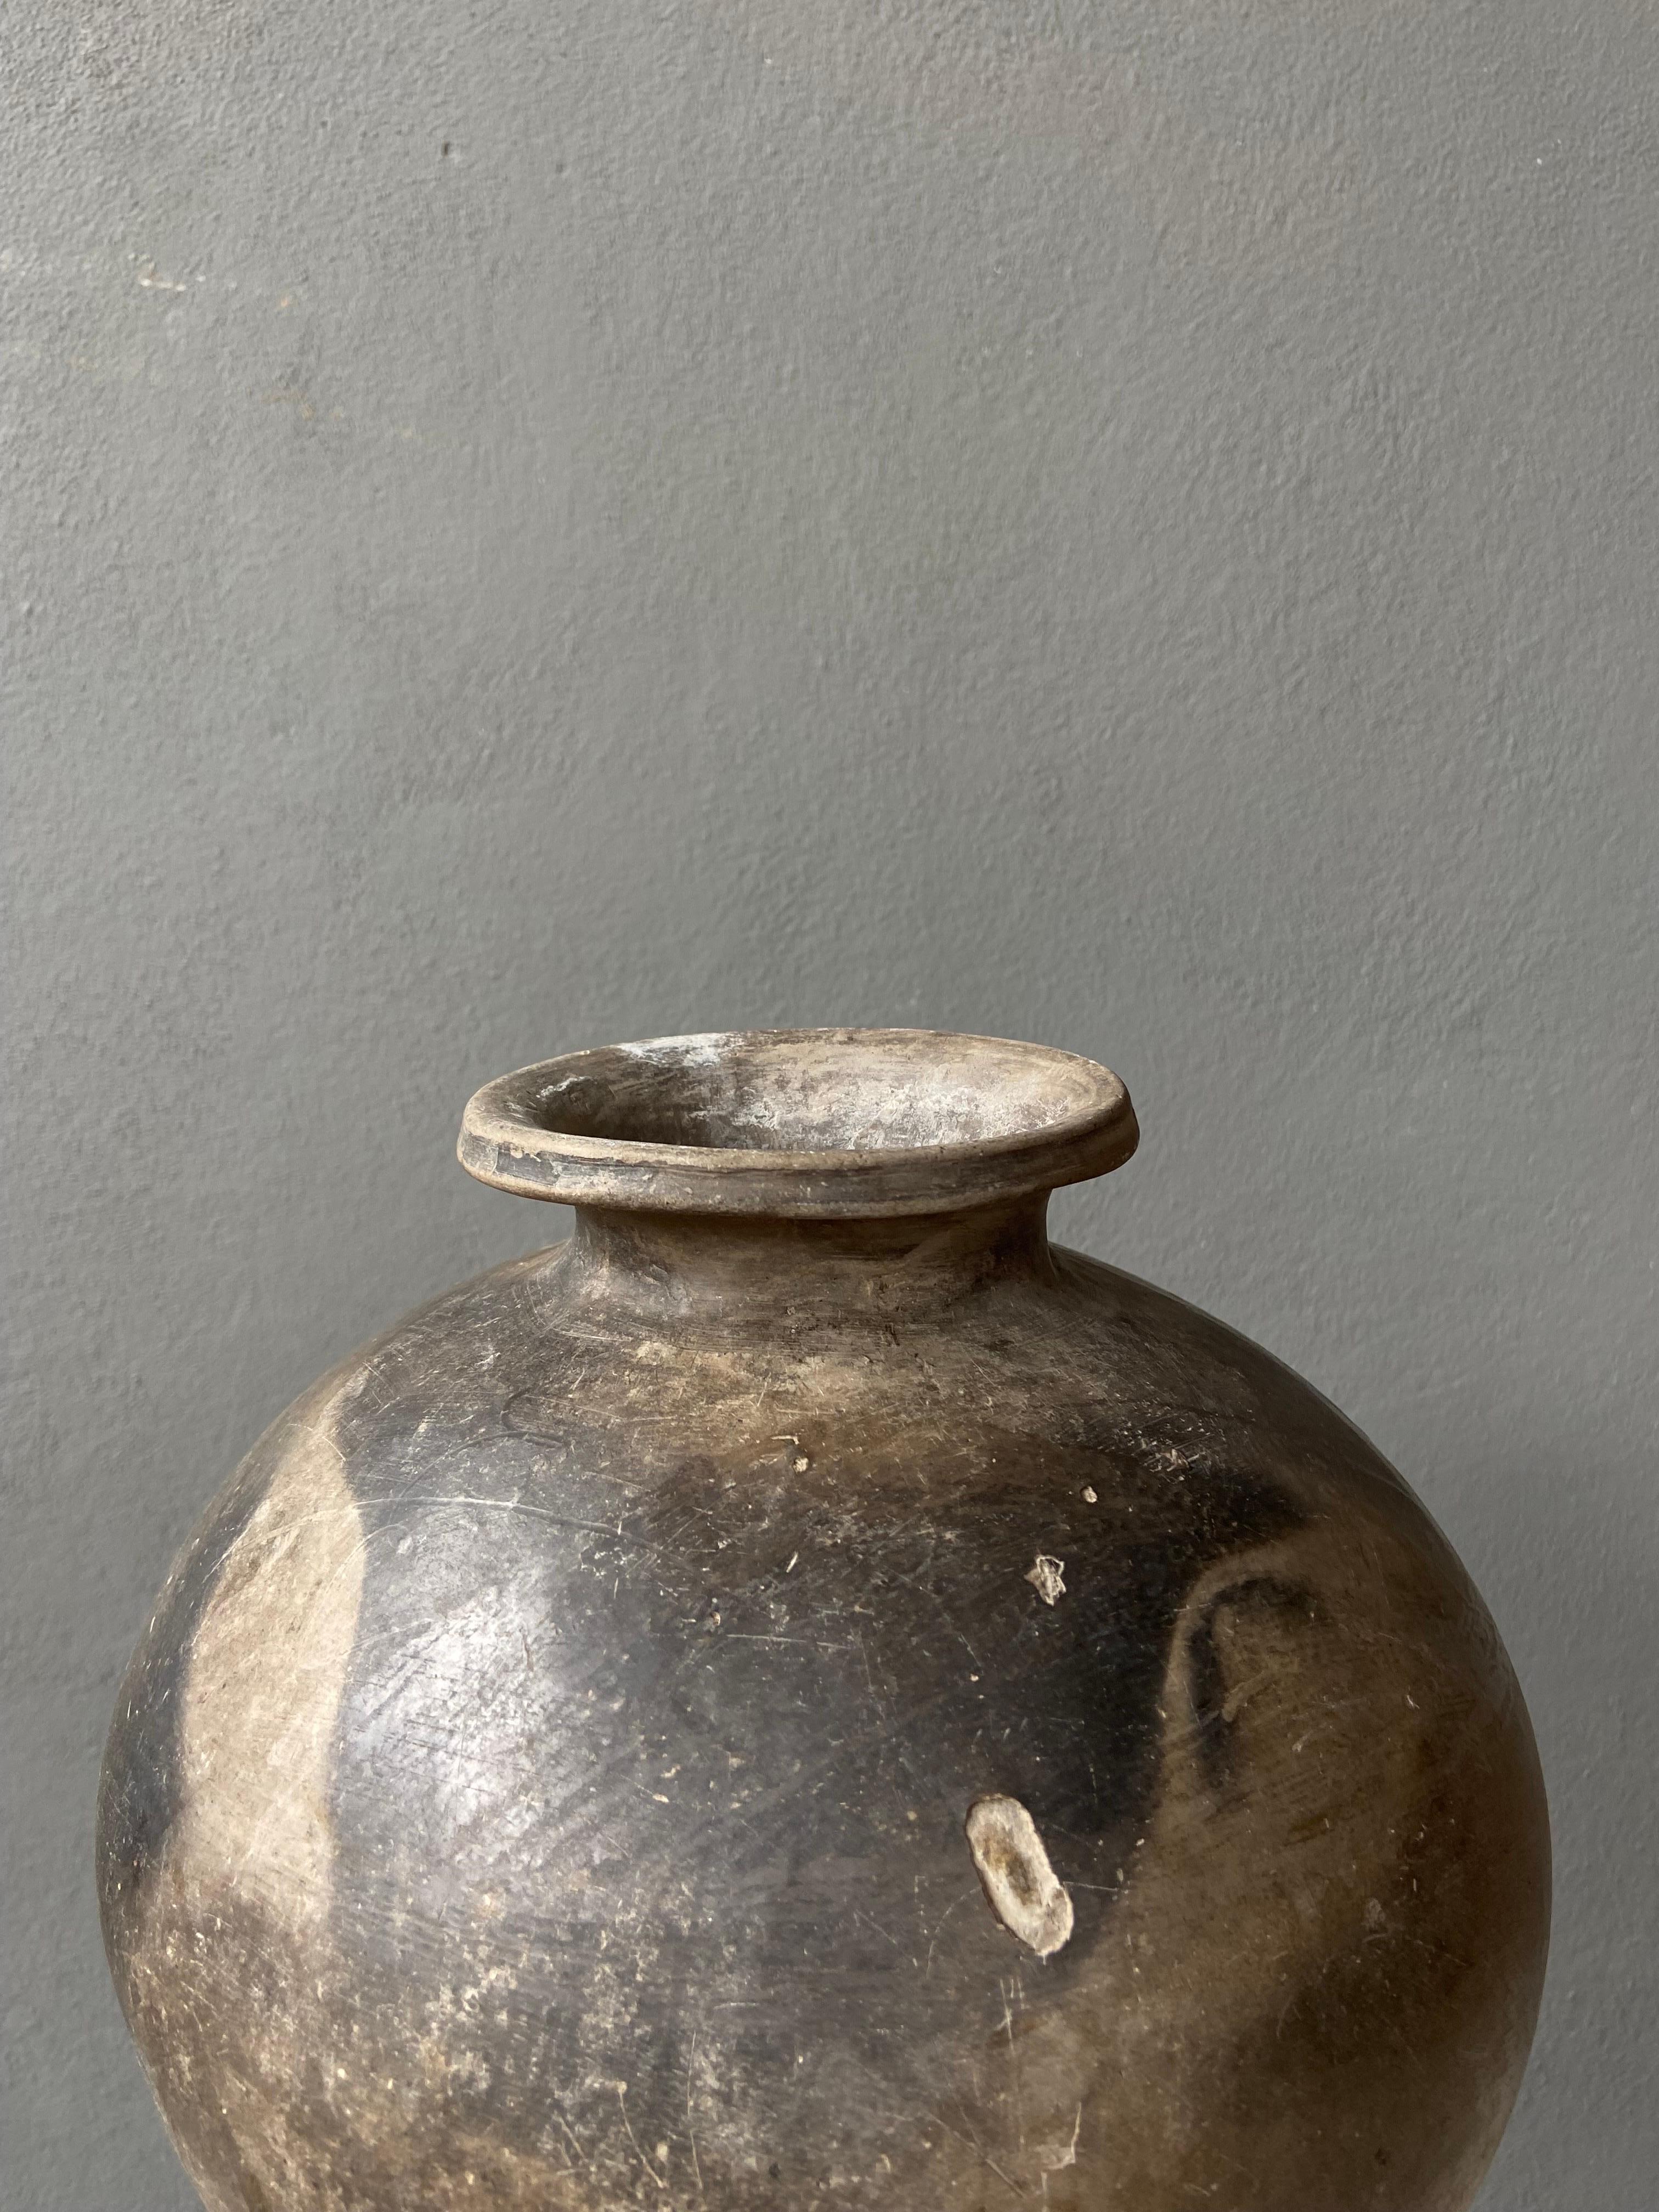 Schwarzer Ton Keramik Mezcal Jar aus Oaxaca, Mexiko, 1950er Jahre (Gebrannt)